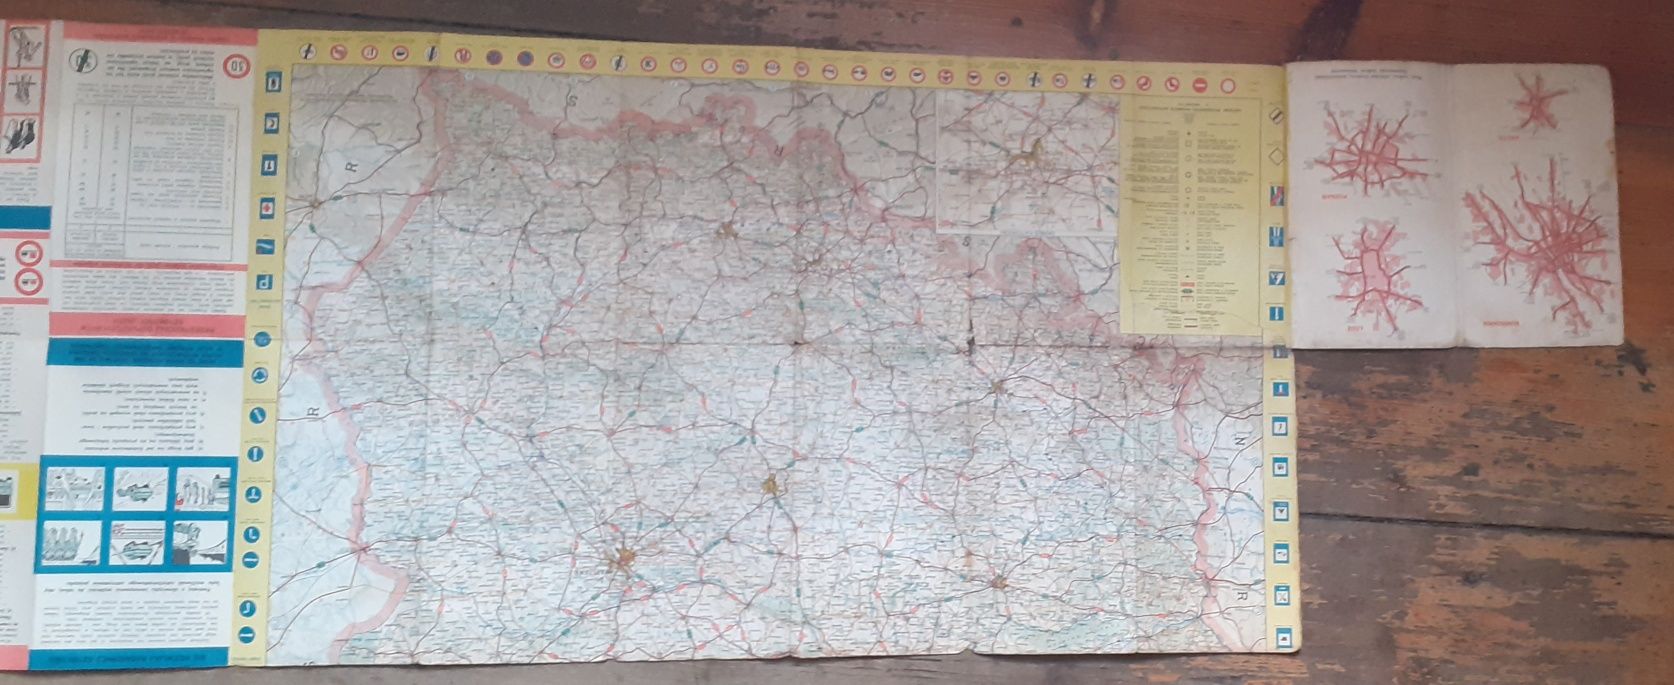 MON Szefostwo Służby Czołgowo-Samochodowej  , mapa .